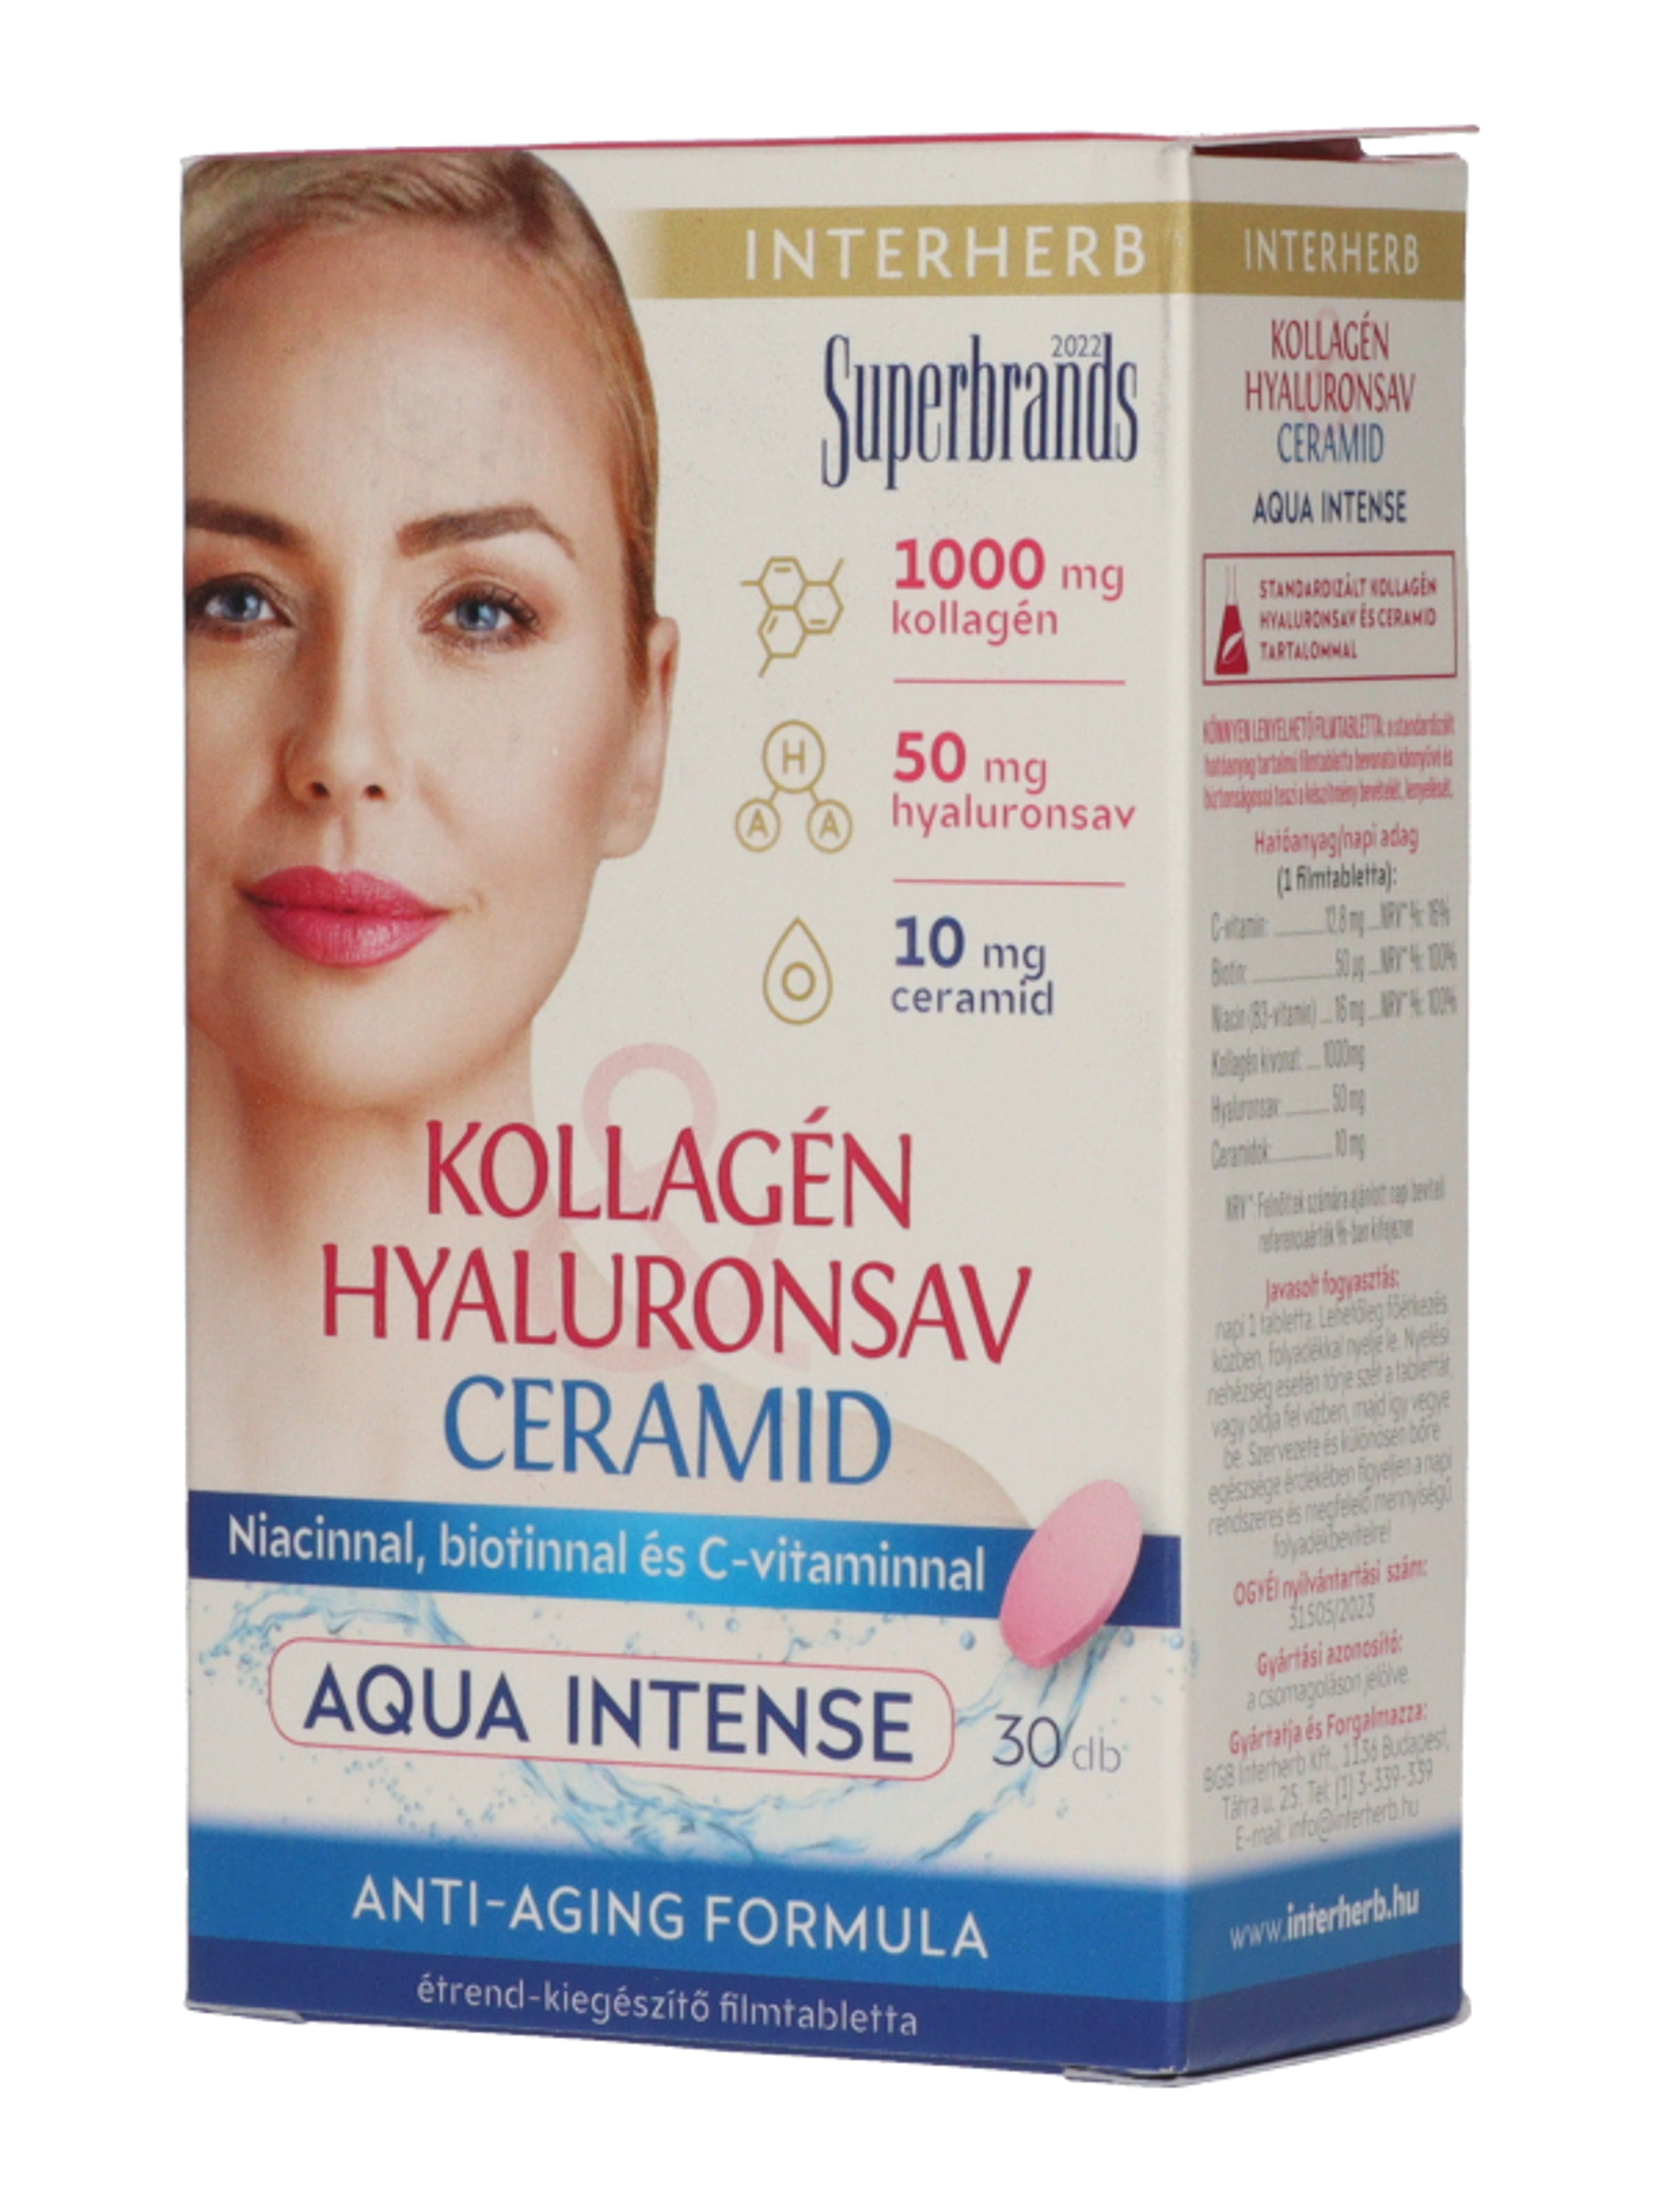 Interherb Kollagén&Hyaluronsav&Ceramid Aqua Intense tabletta - 30 db-2